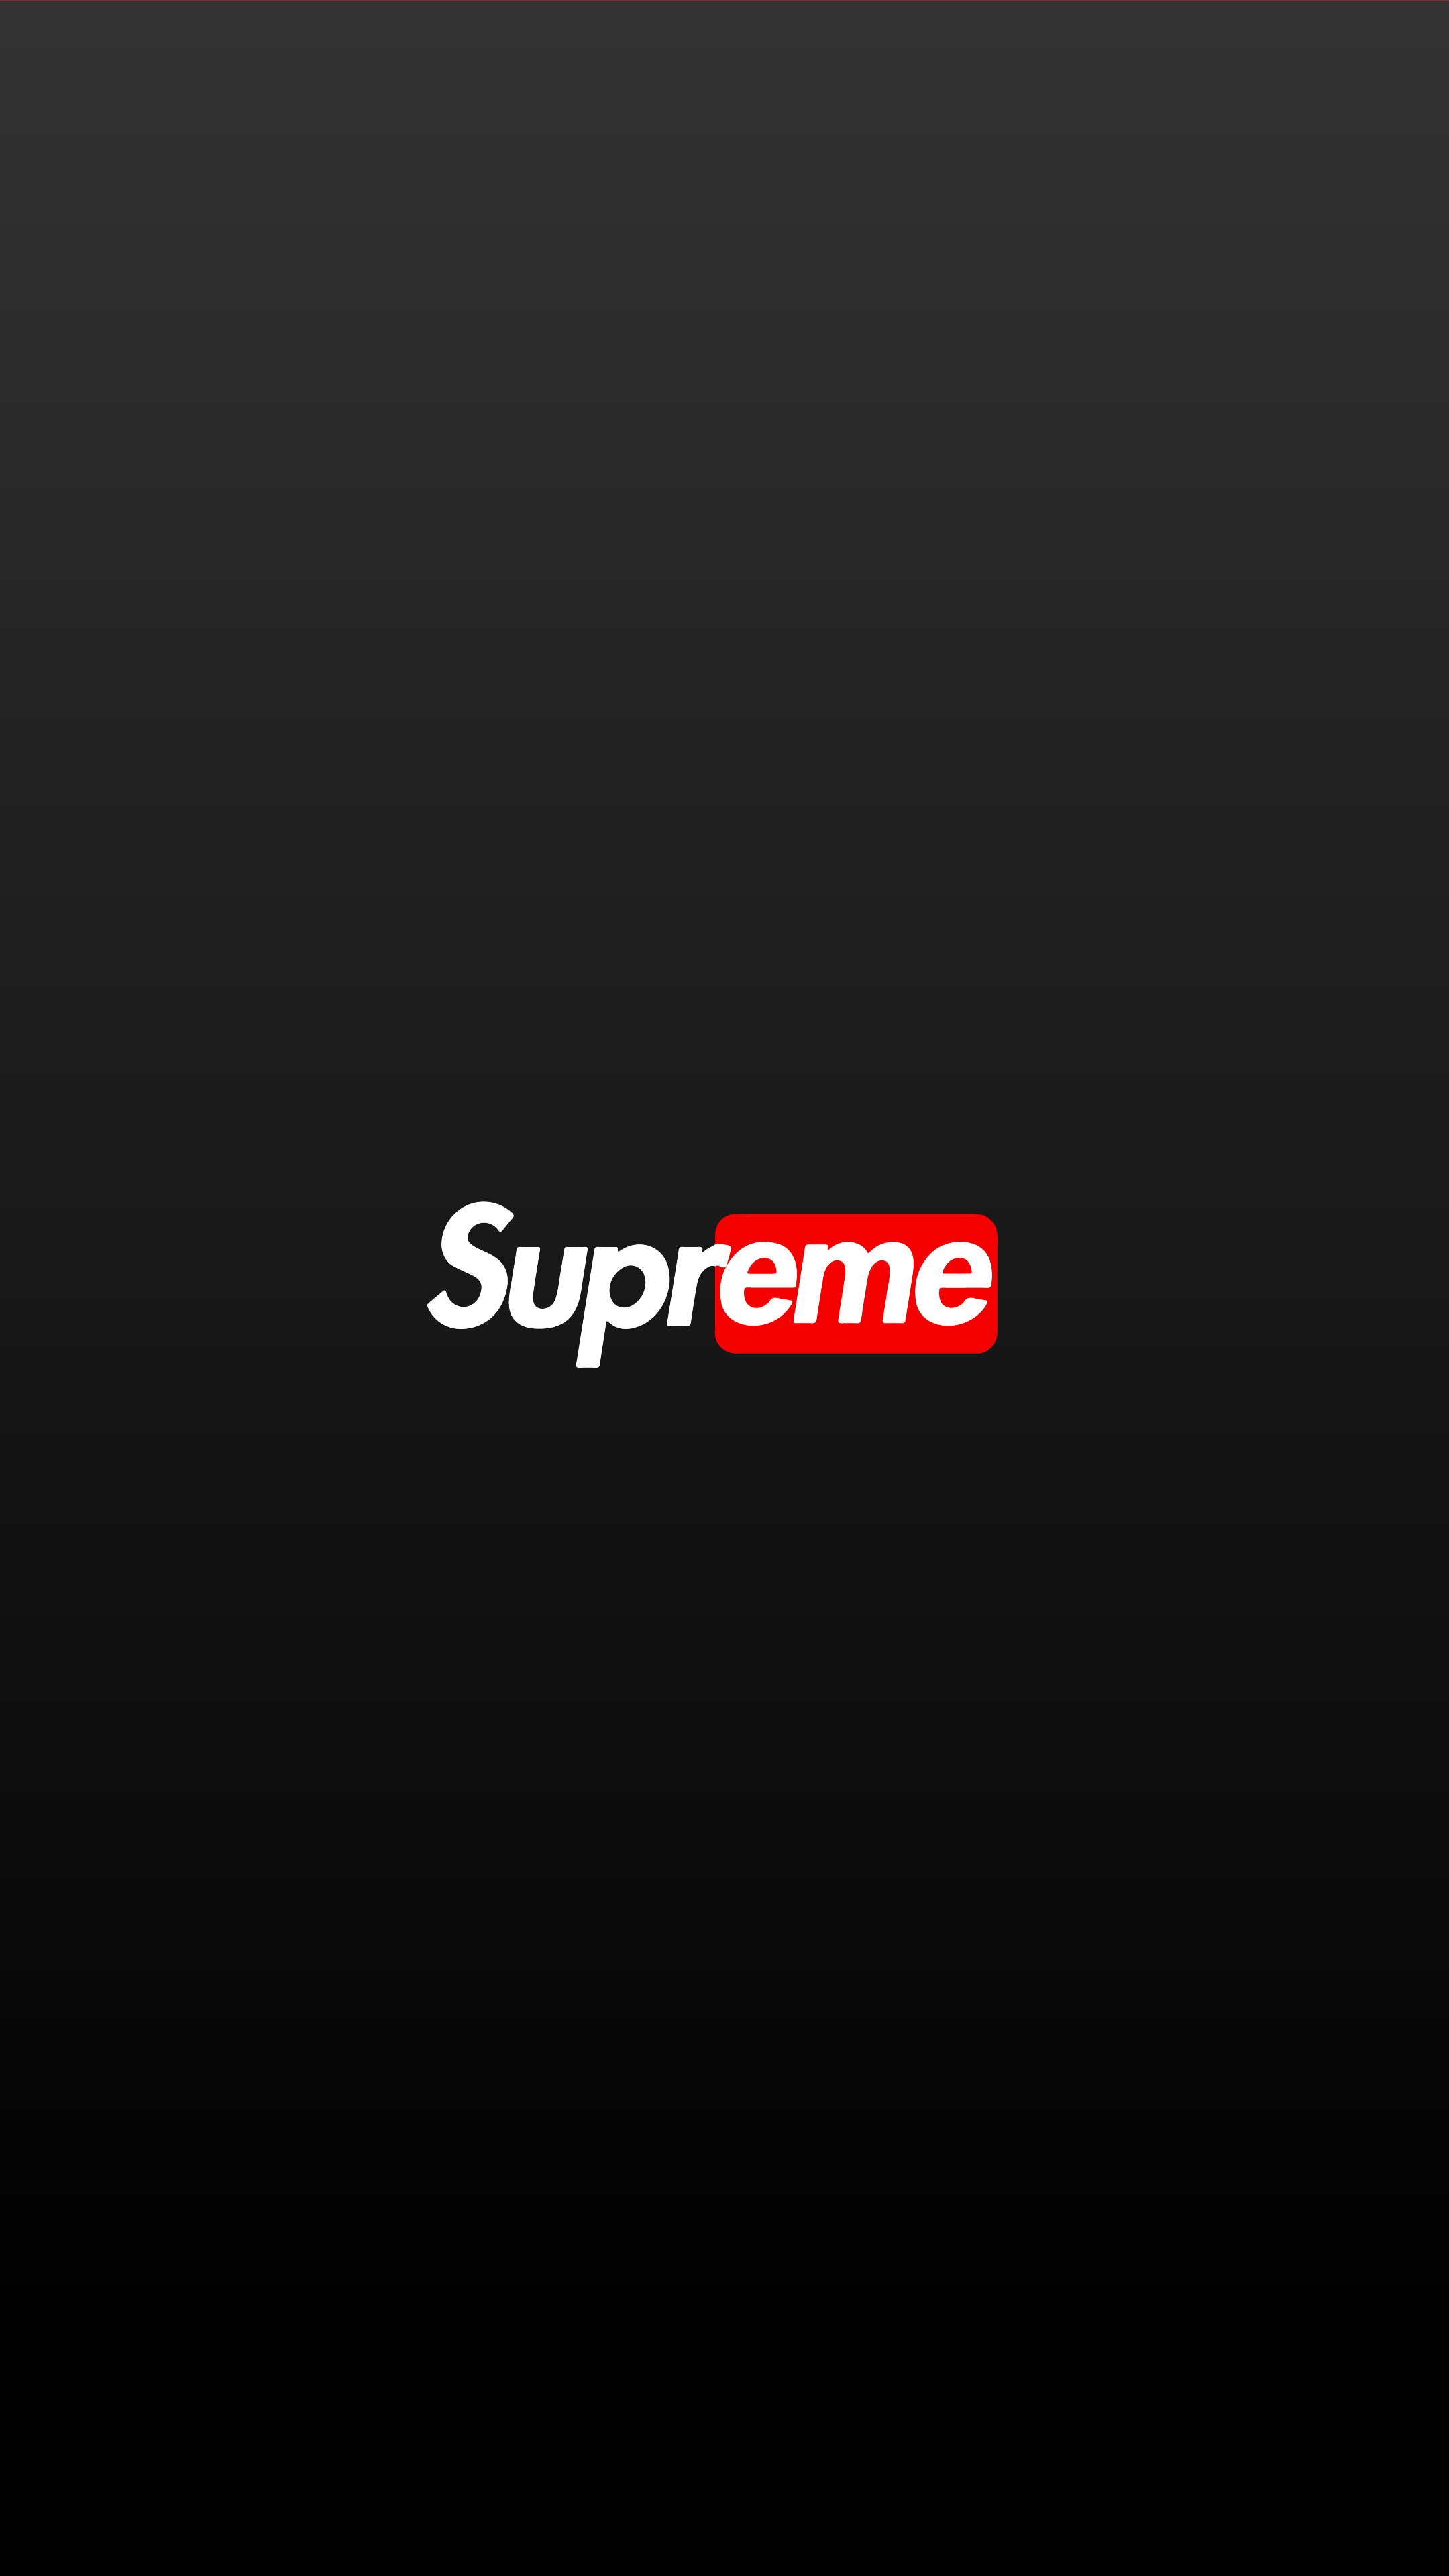 supreme logo pornhub wallpaper 4k